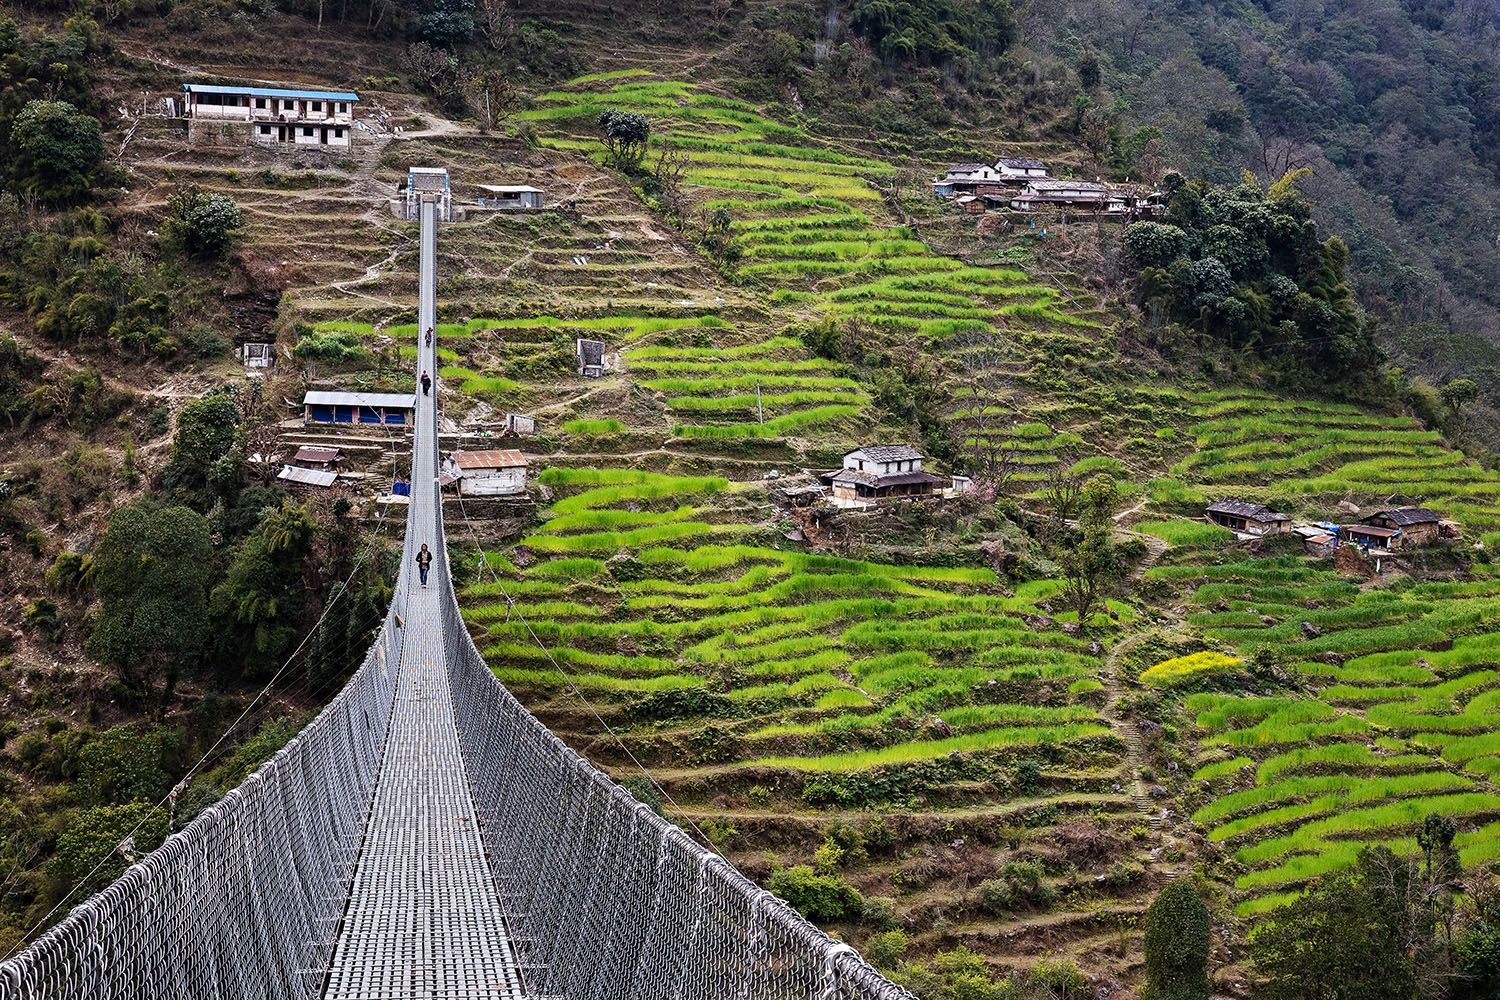 Nepál, Michal Novotný, fotoreportáž